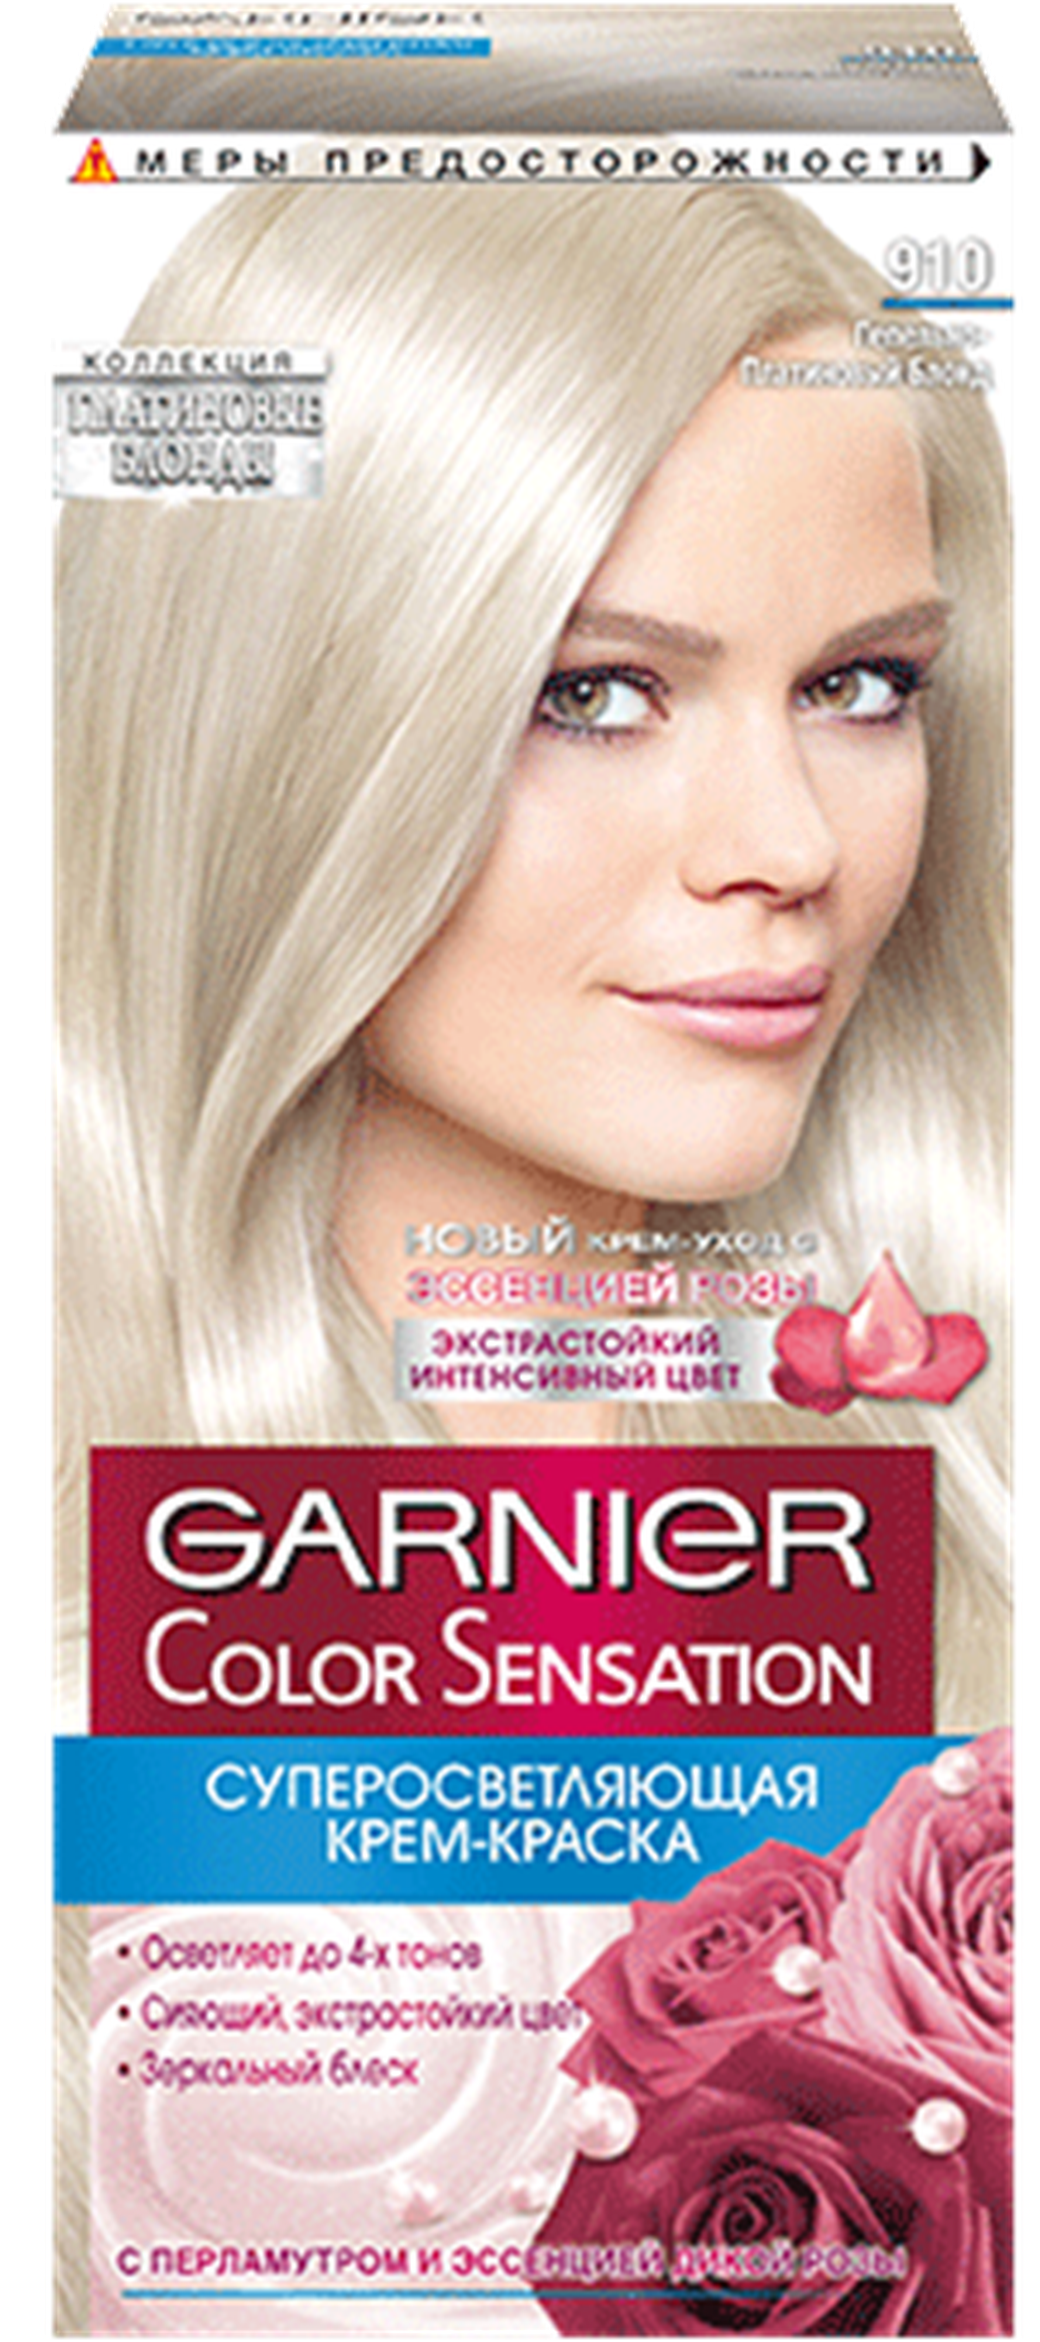 Краска для волос garnier отзывы. Garnier платиновый блонд 111. Color Sensation 111 Ультраблонд. Краска Garnier 101 Color Sensation платиновый блонд. Краска Garnier Color Sensation 910.